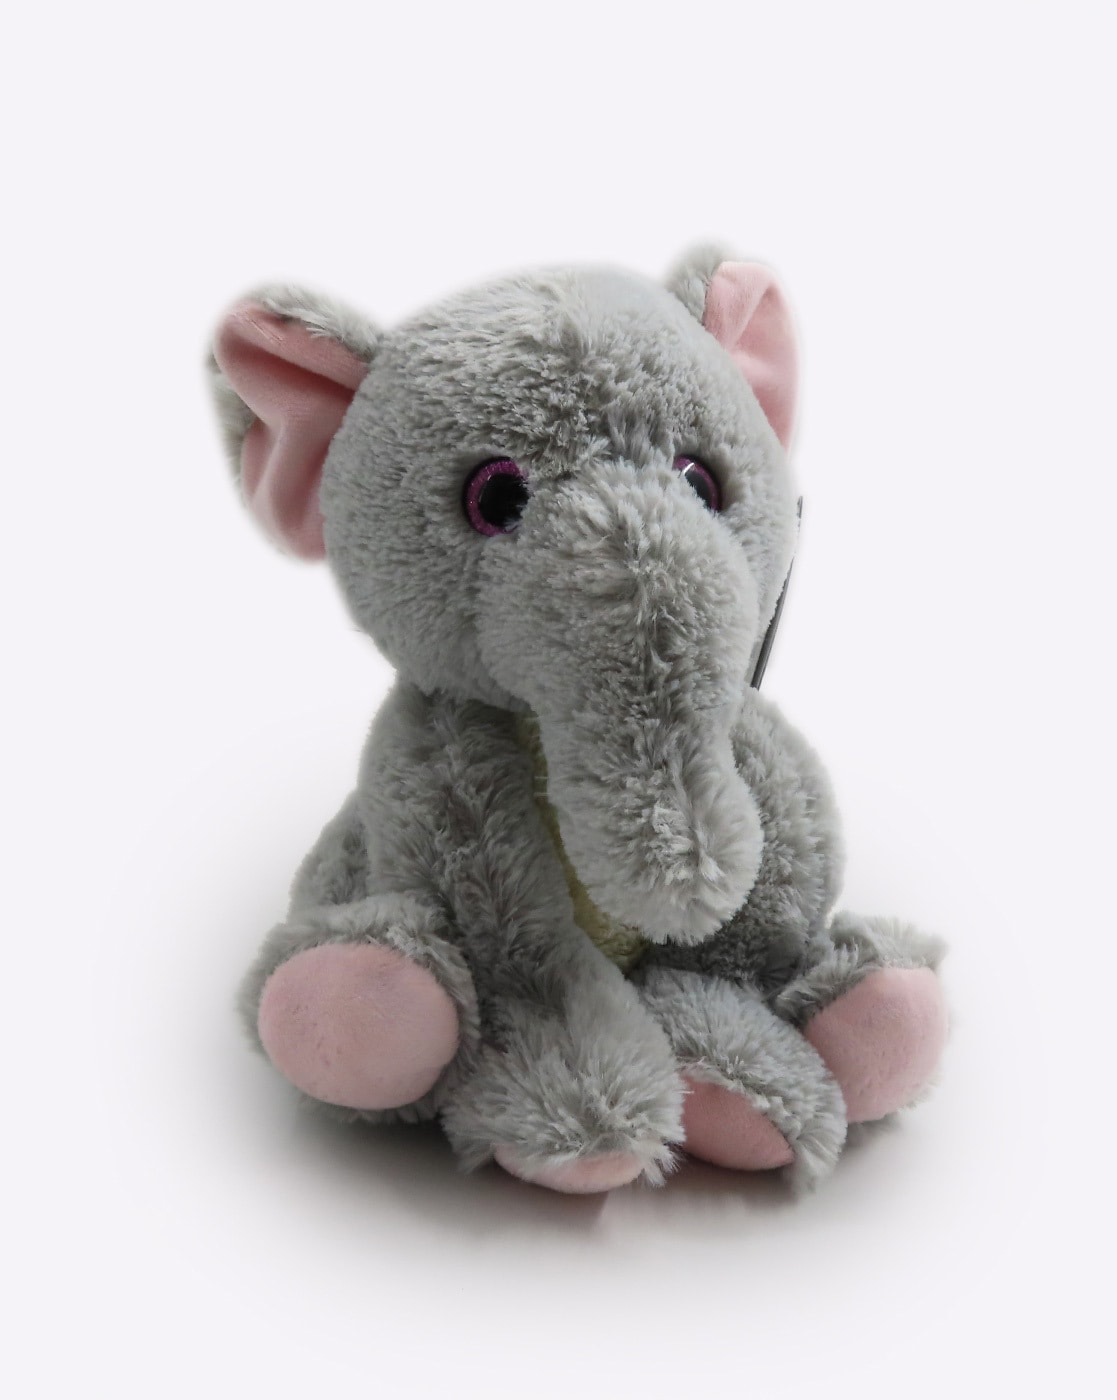 the elephant plush toy